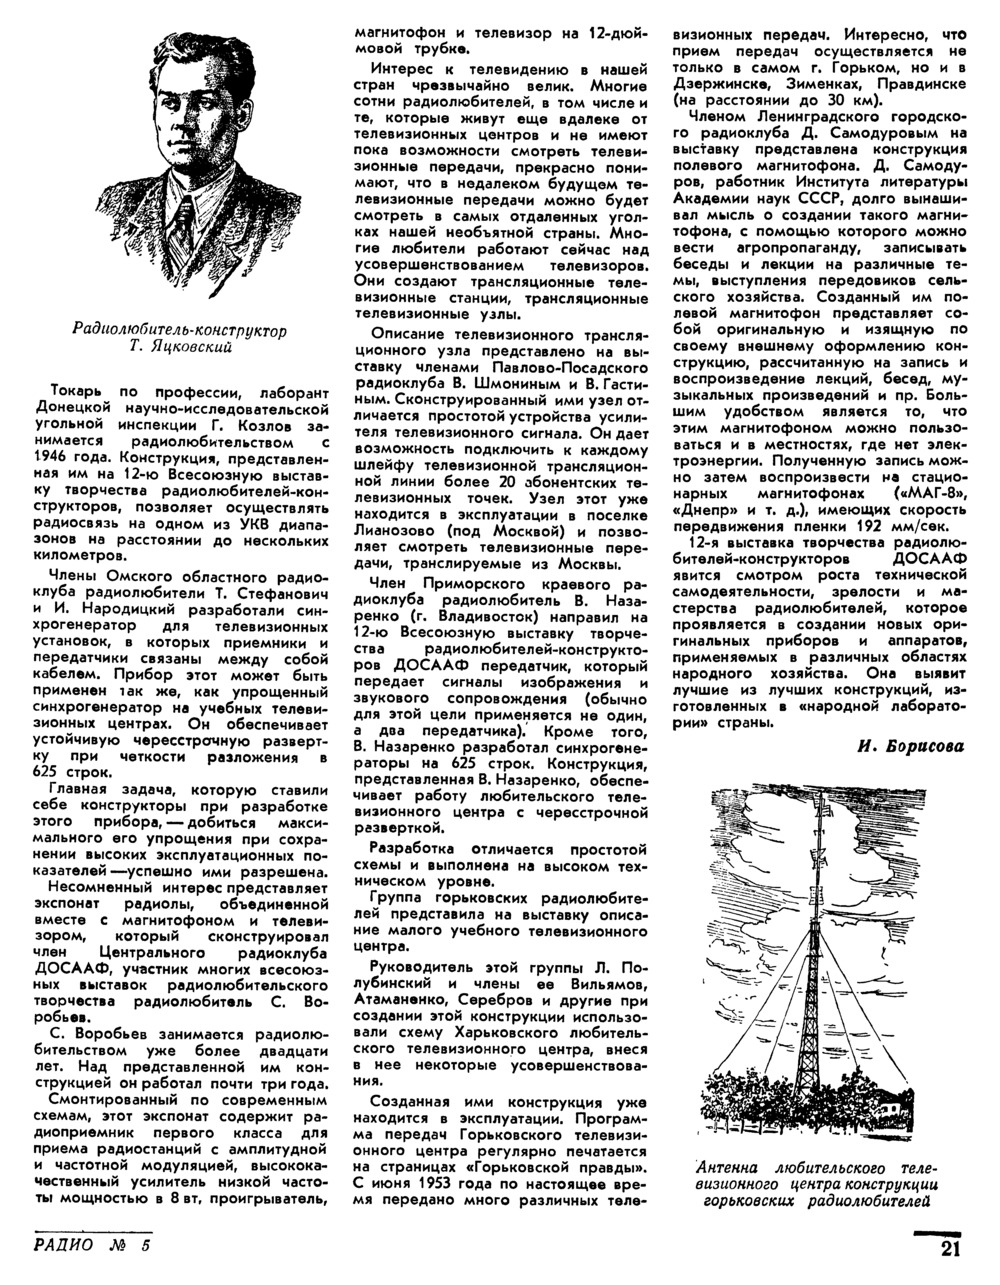 Стр. 21 журнала «Радио» № 5 за 1955 год